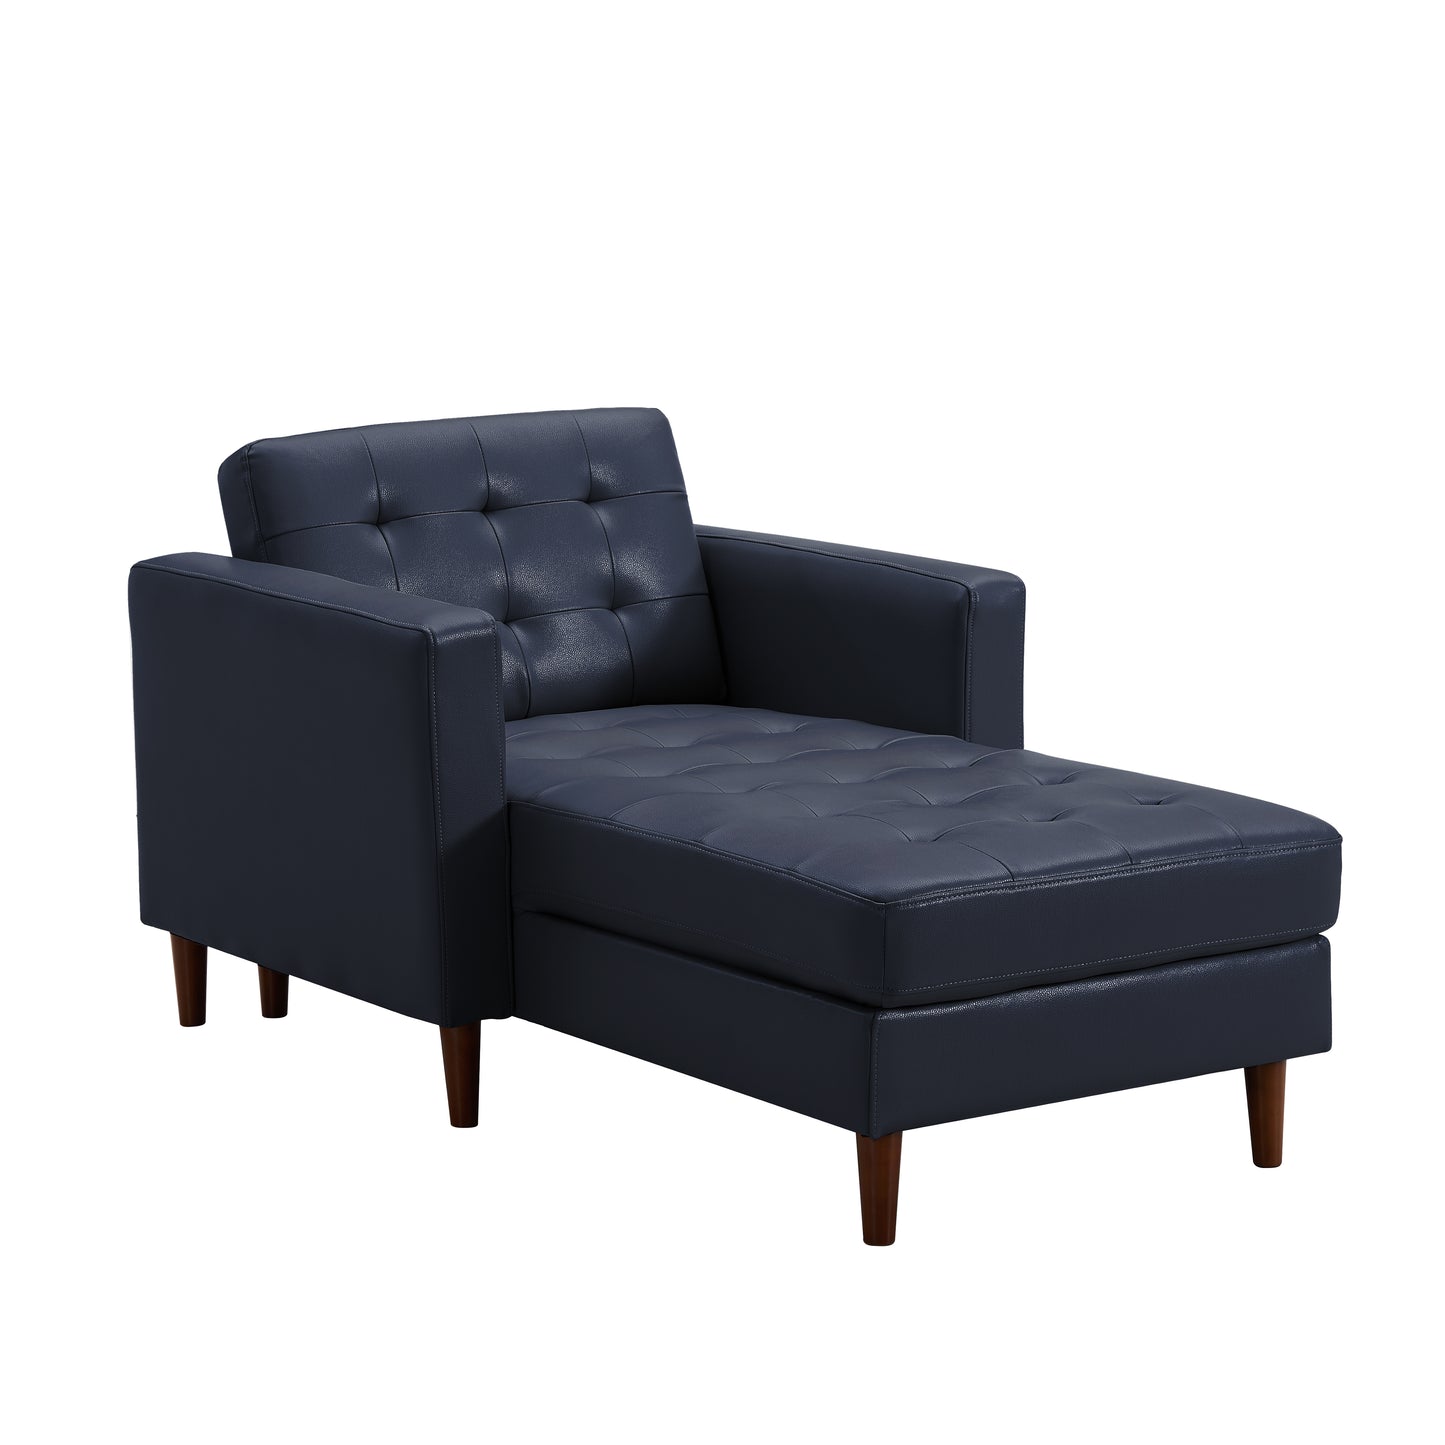 U-shaped sofa Tech PU Leather Chaise Sofa